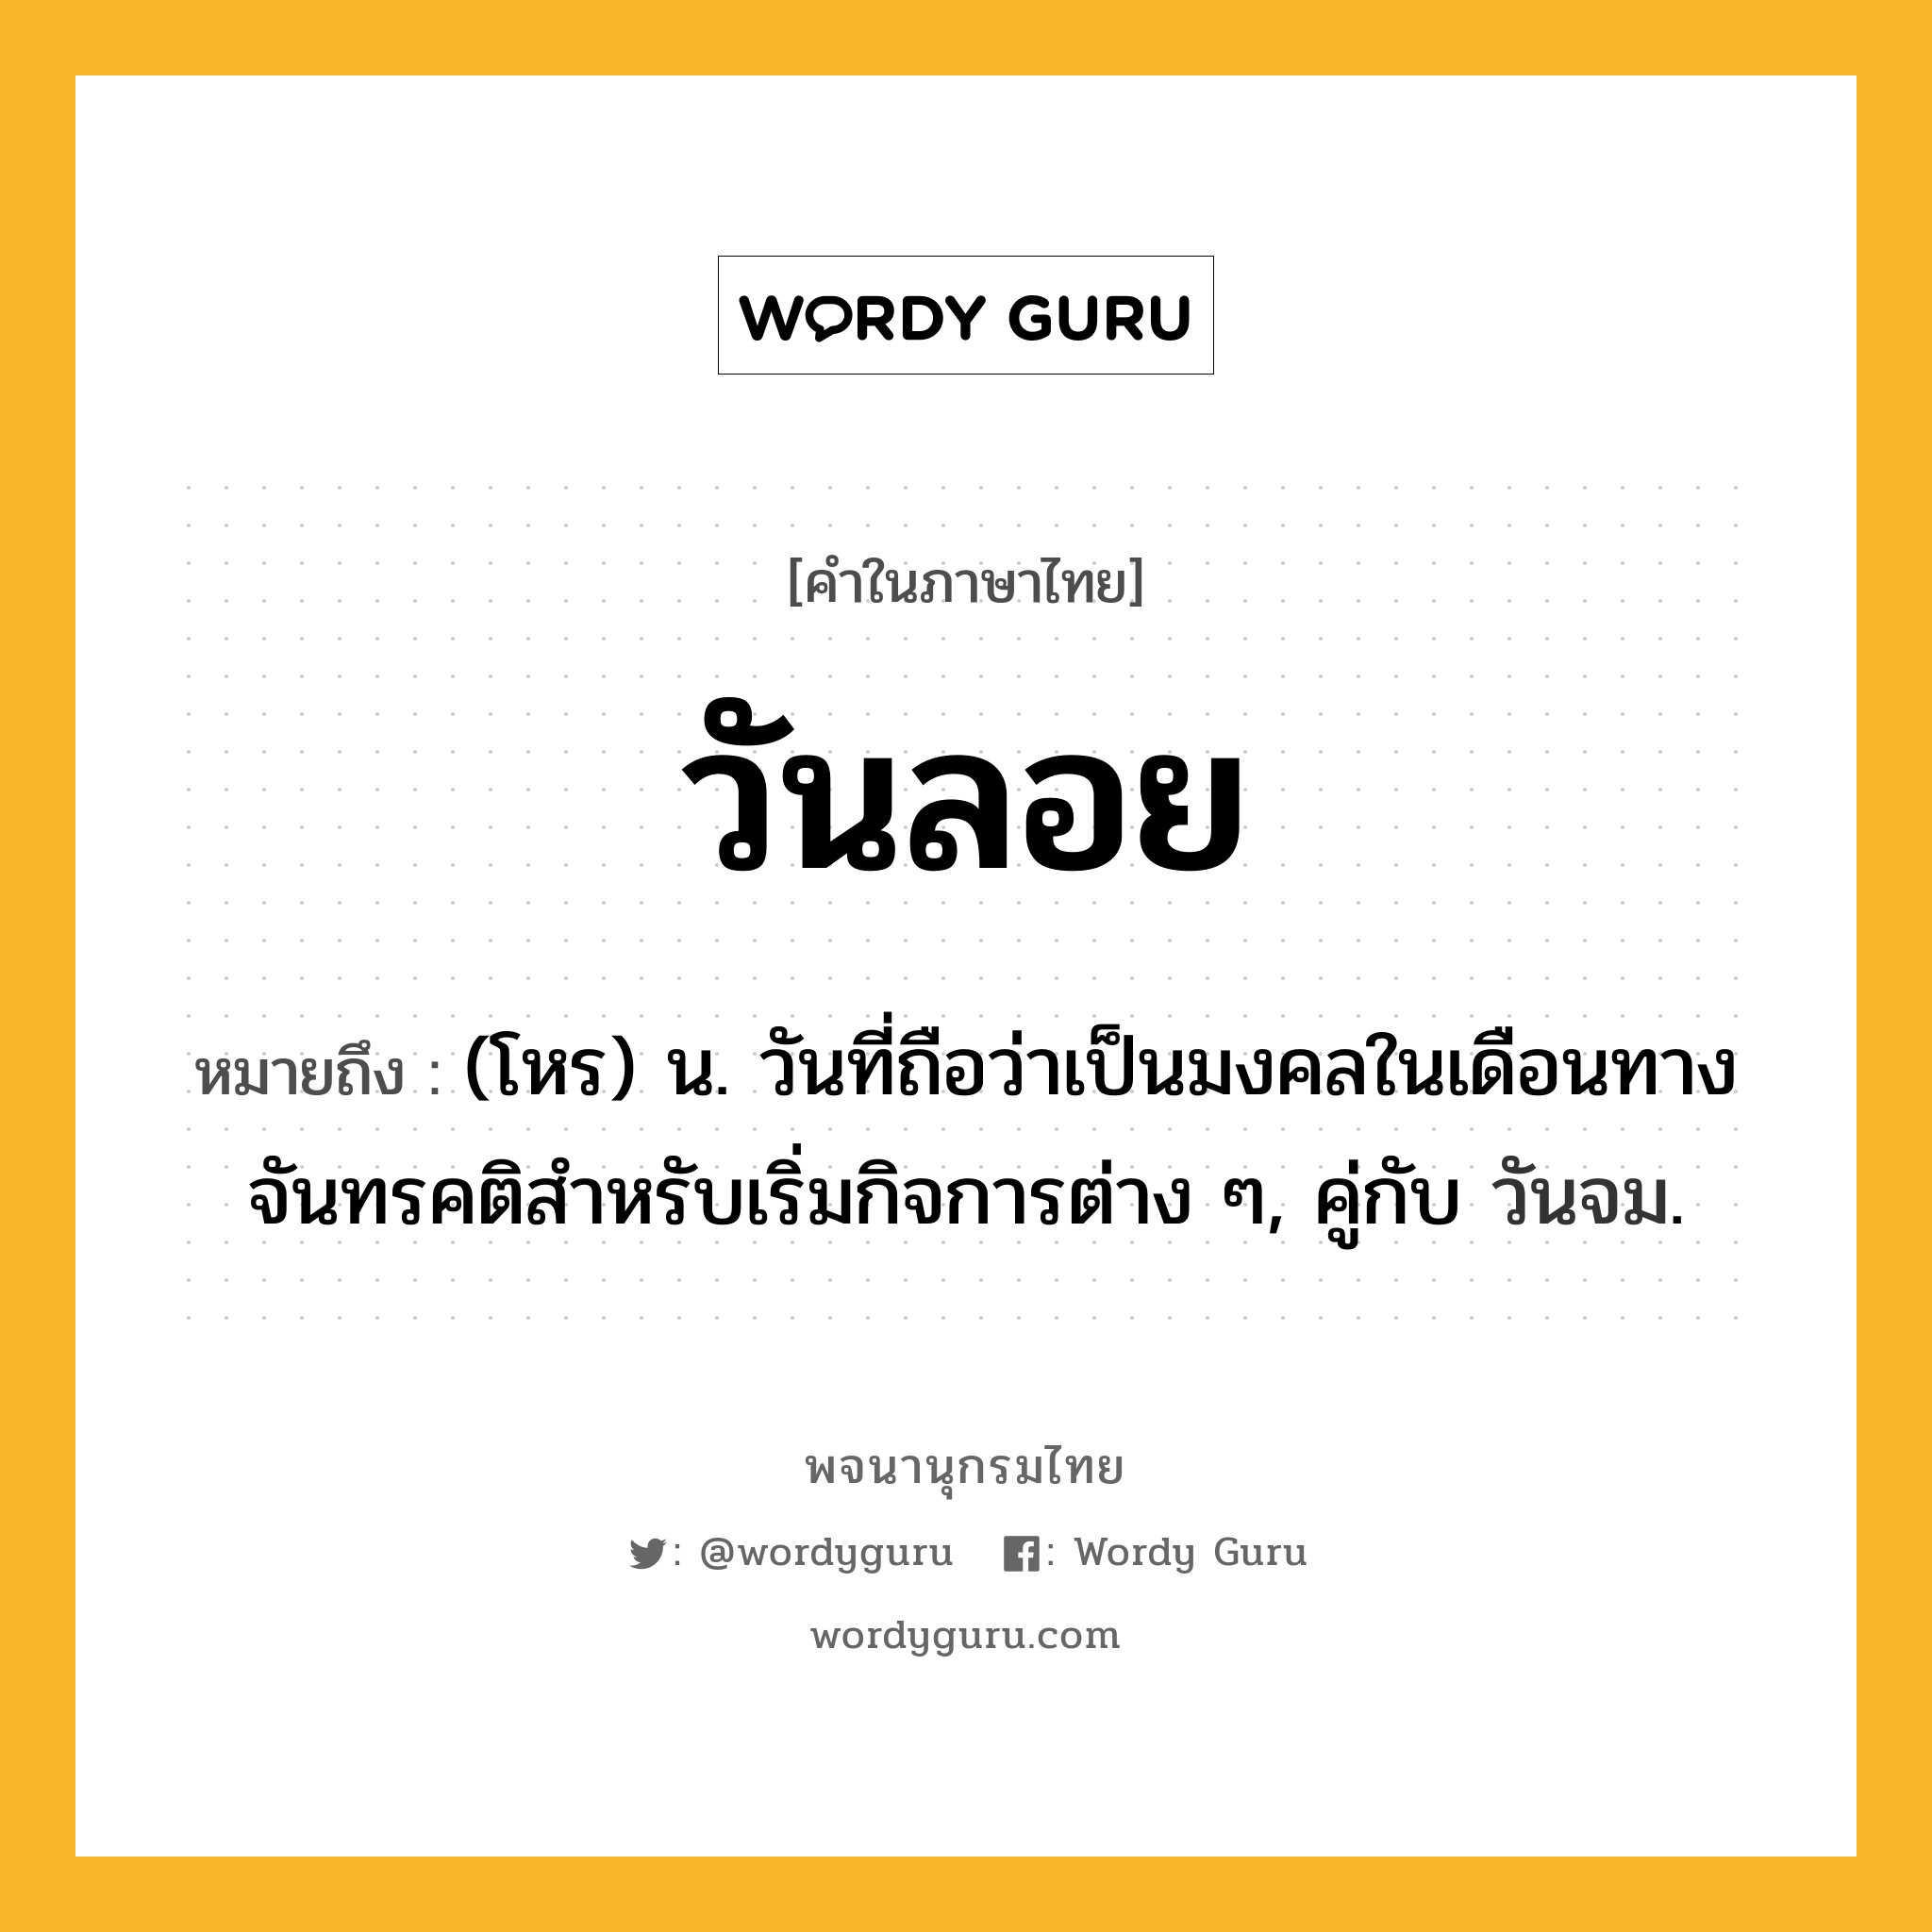 วันลอย หมายถึงอะไร?, คำในภาษาไทย วันลอย หมายถึง (โหร) น. วันที่ถือว่าเป็นมงคลในเดือนทางจันทรคติสําหรับเริ่มกิจการต่าง ๆ, คู่กับ วันจม.